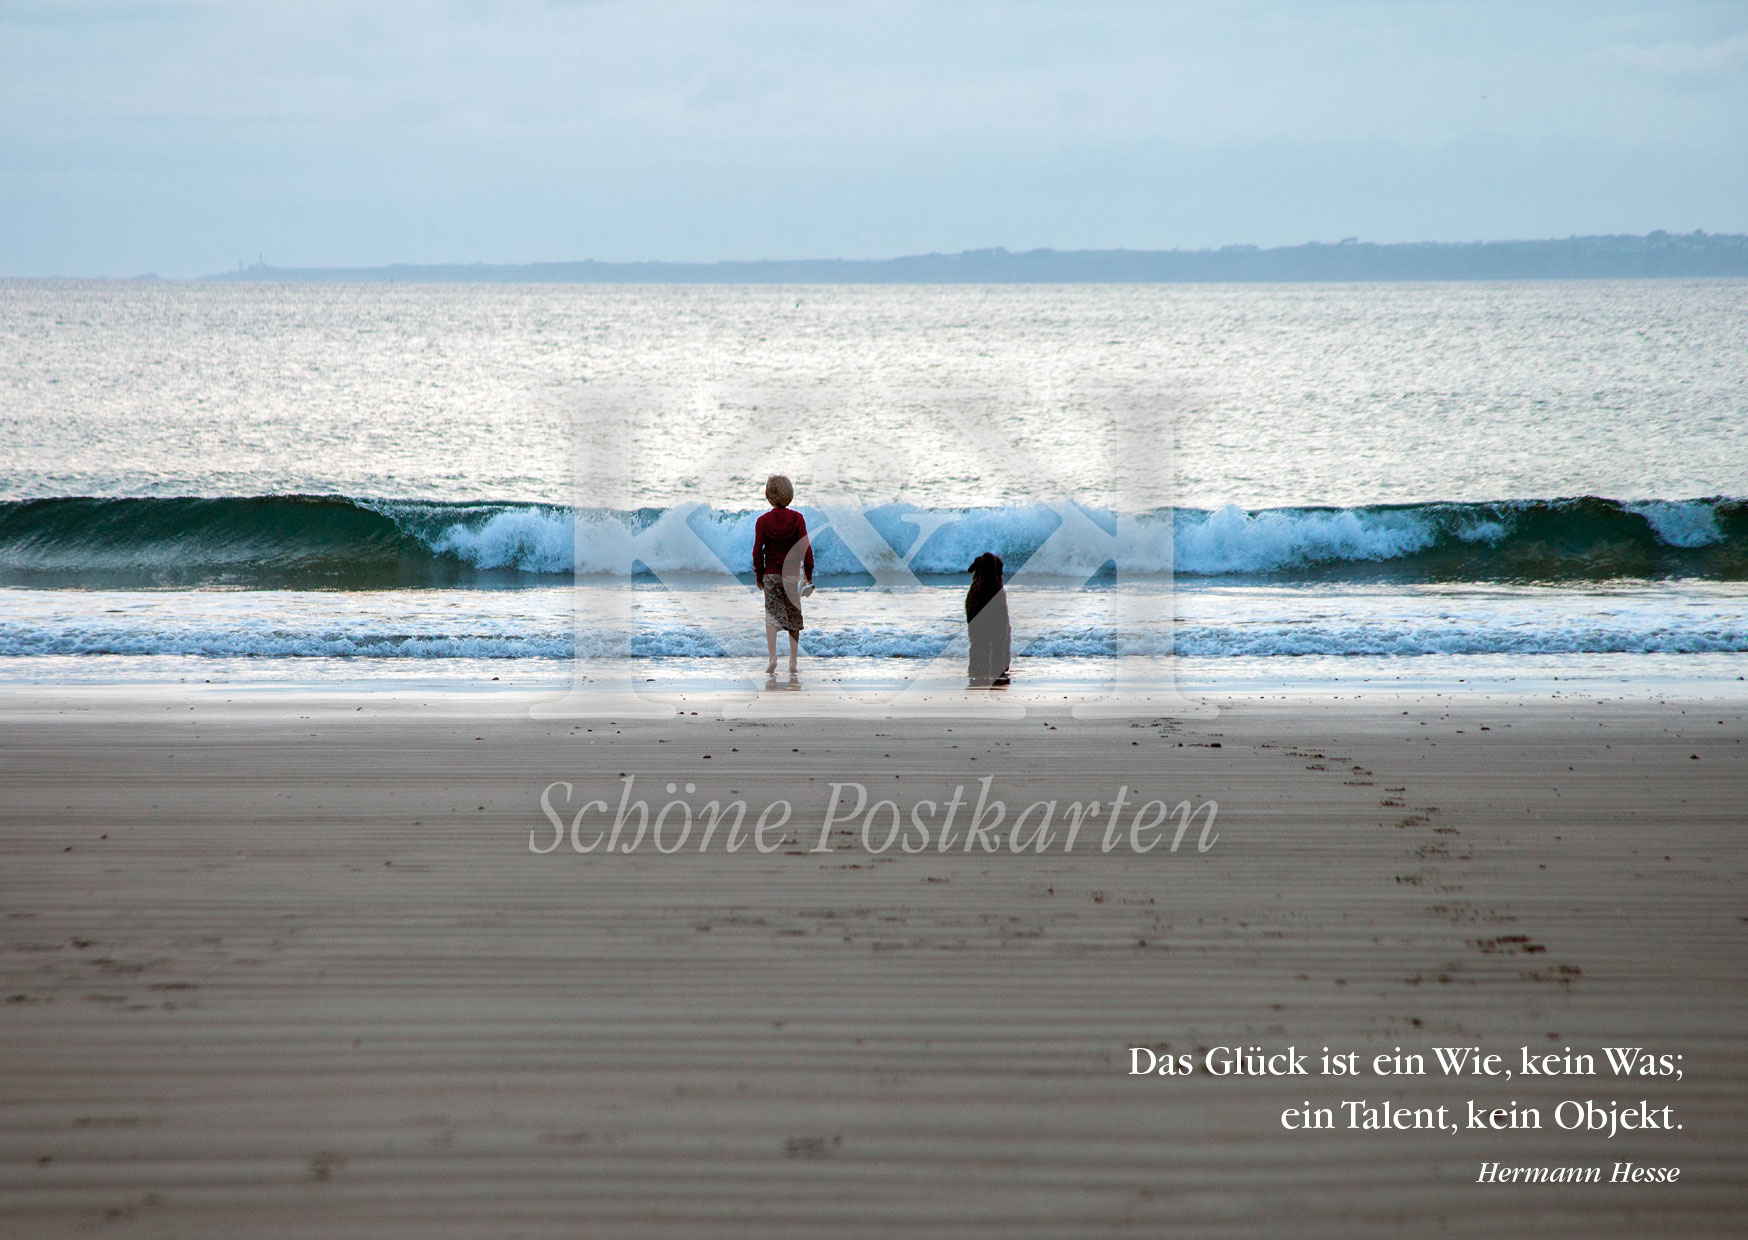 Schöne Postkarte Nr. 129 · Junge, Hund, Meer, Strand, Hesse: Das Glück ist ein Talent | © Schöne Postkarten